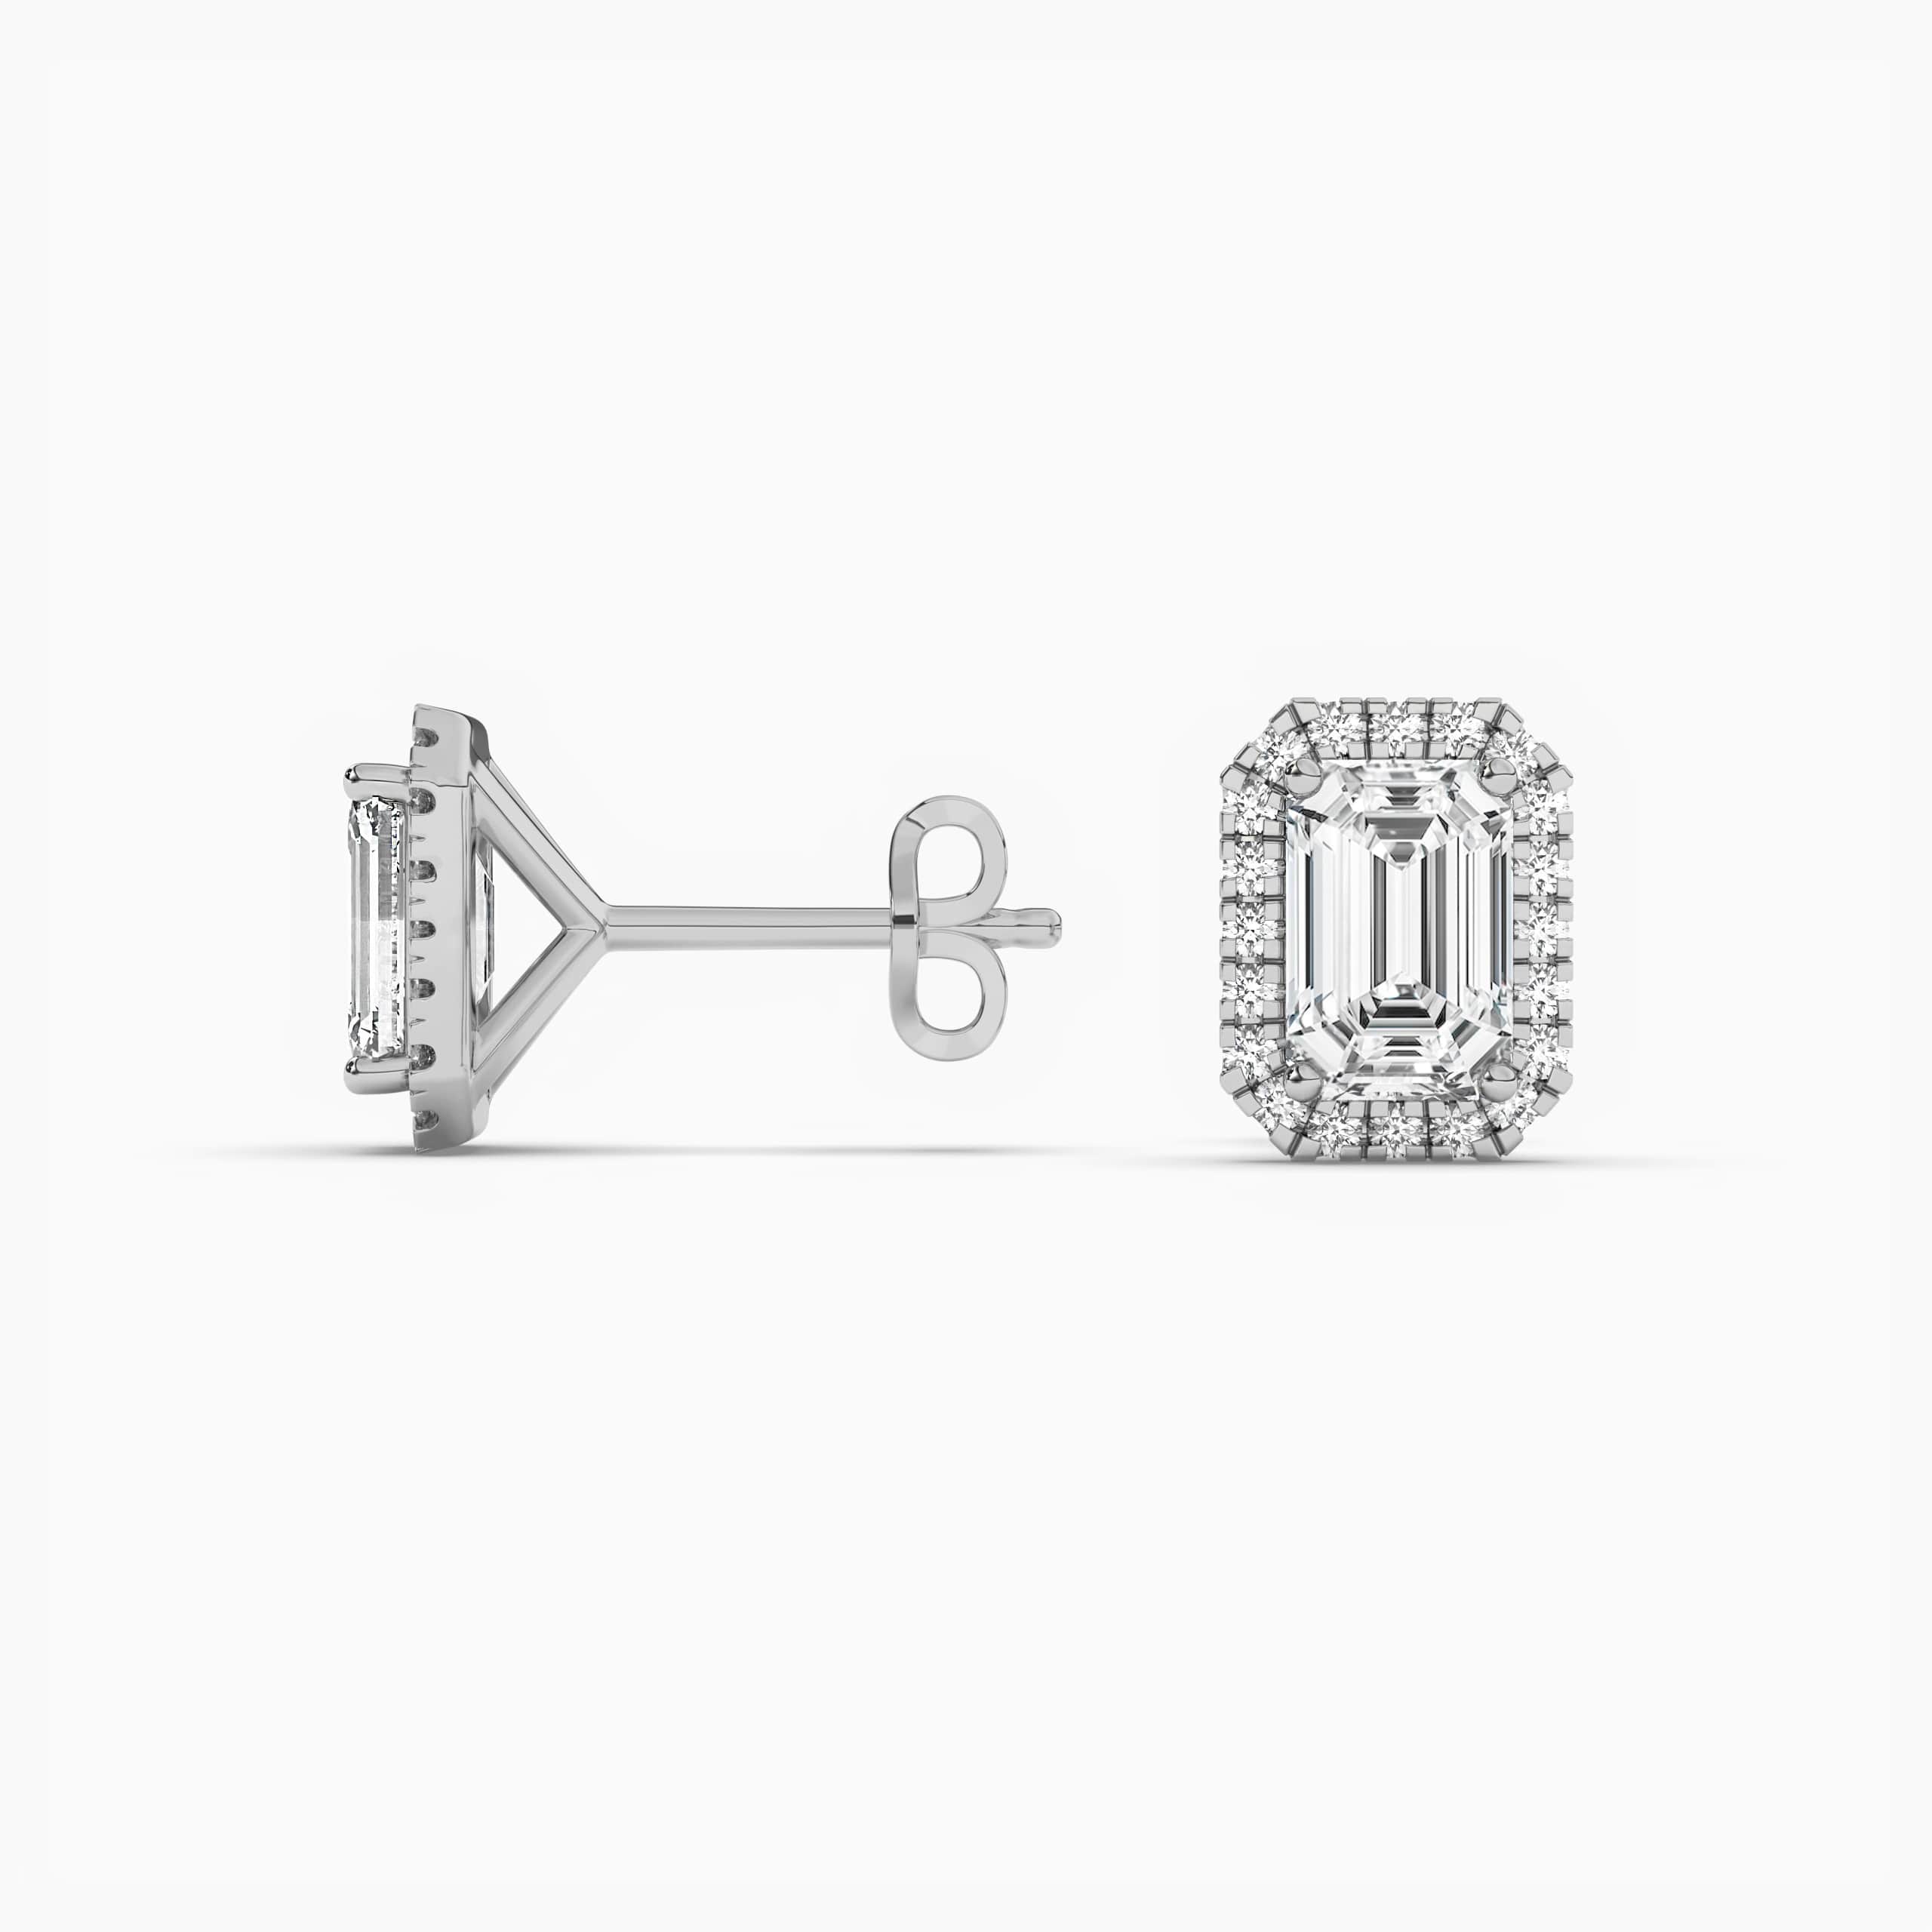 Emerald-Cut Diamond Double Halo Stud Earrings in White Gold